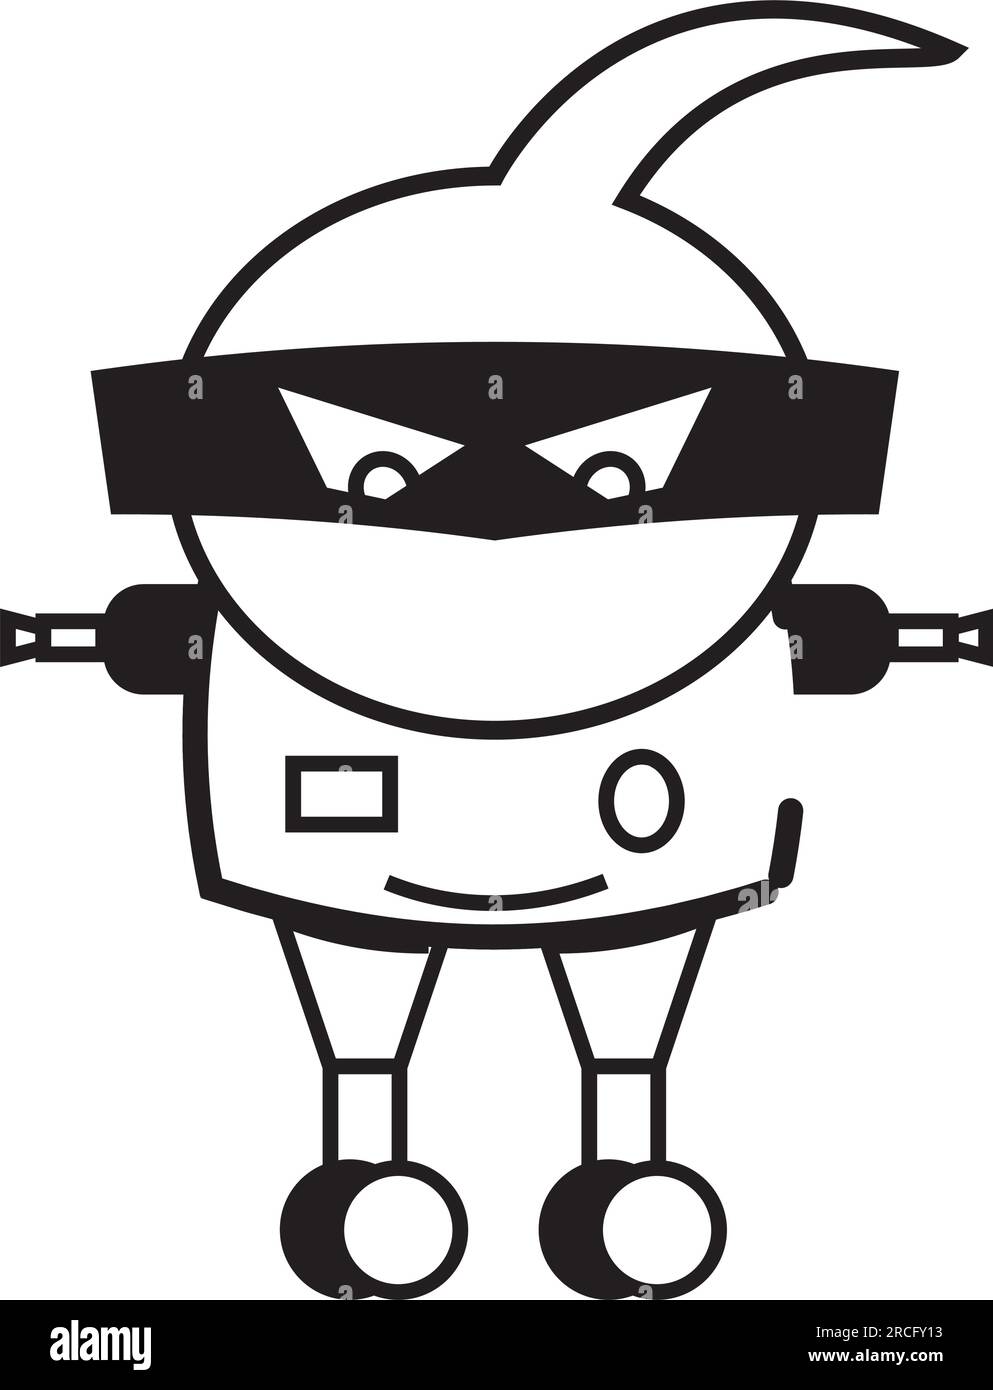 Vecteur d'icône de personnage de jouet de robot monochrome isolé Illustration de Vecteur